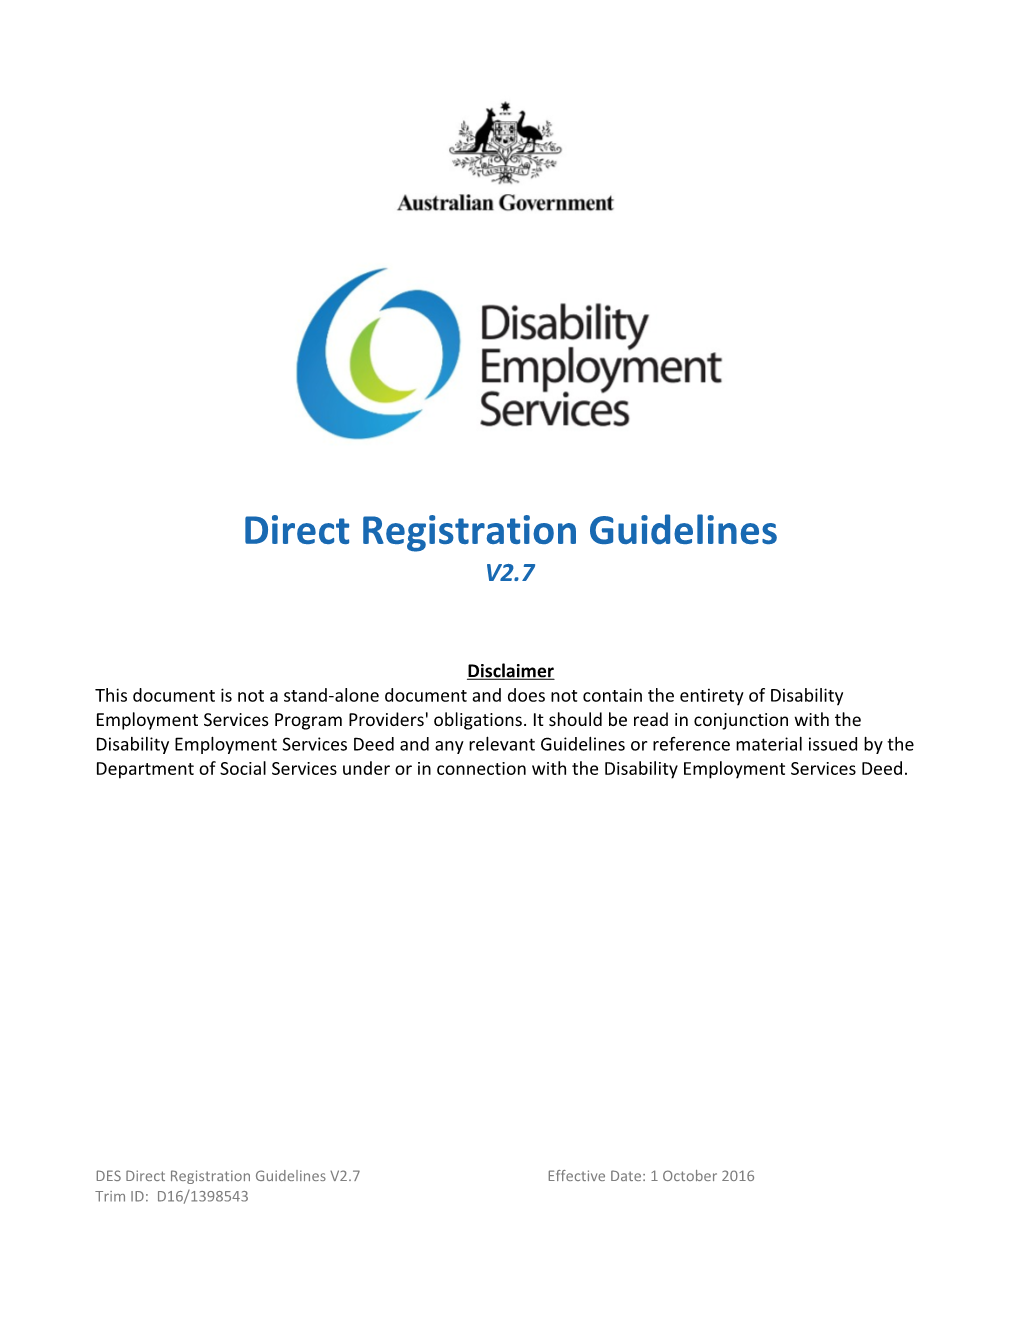 DES Direct Registration Guidelines V2.5